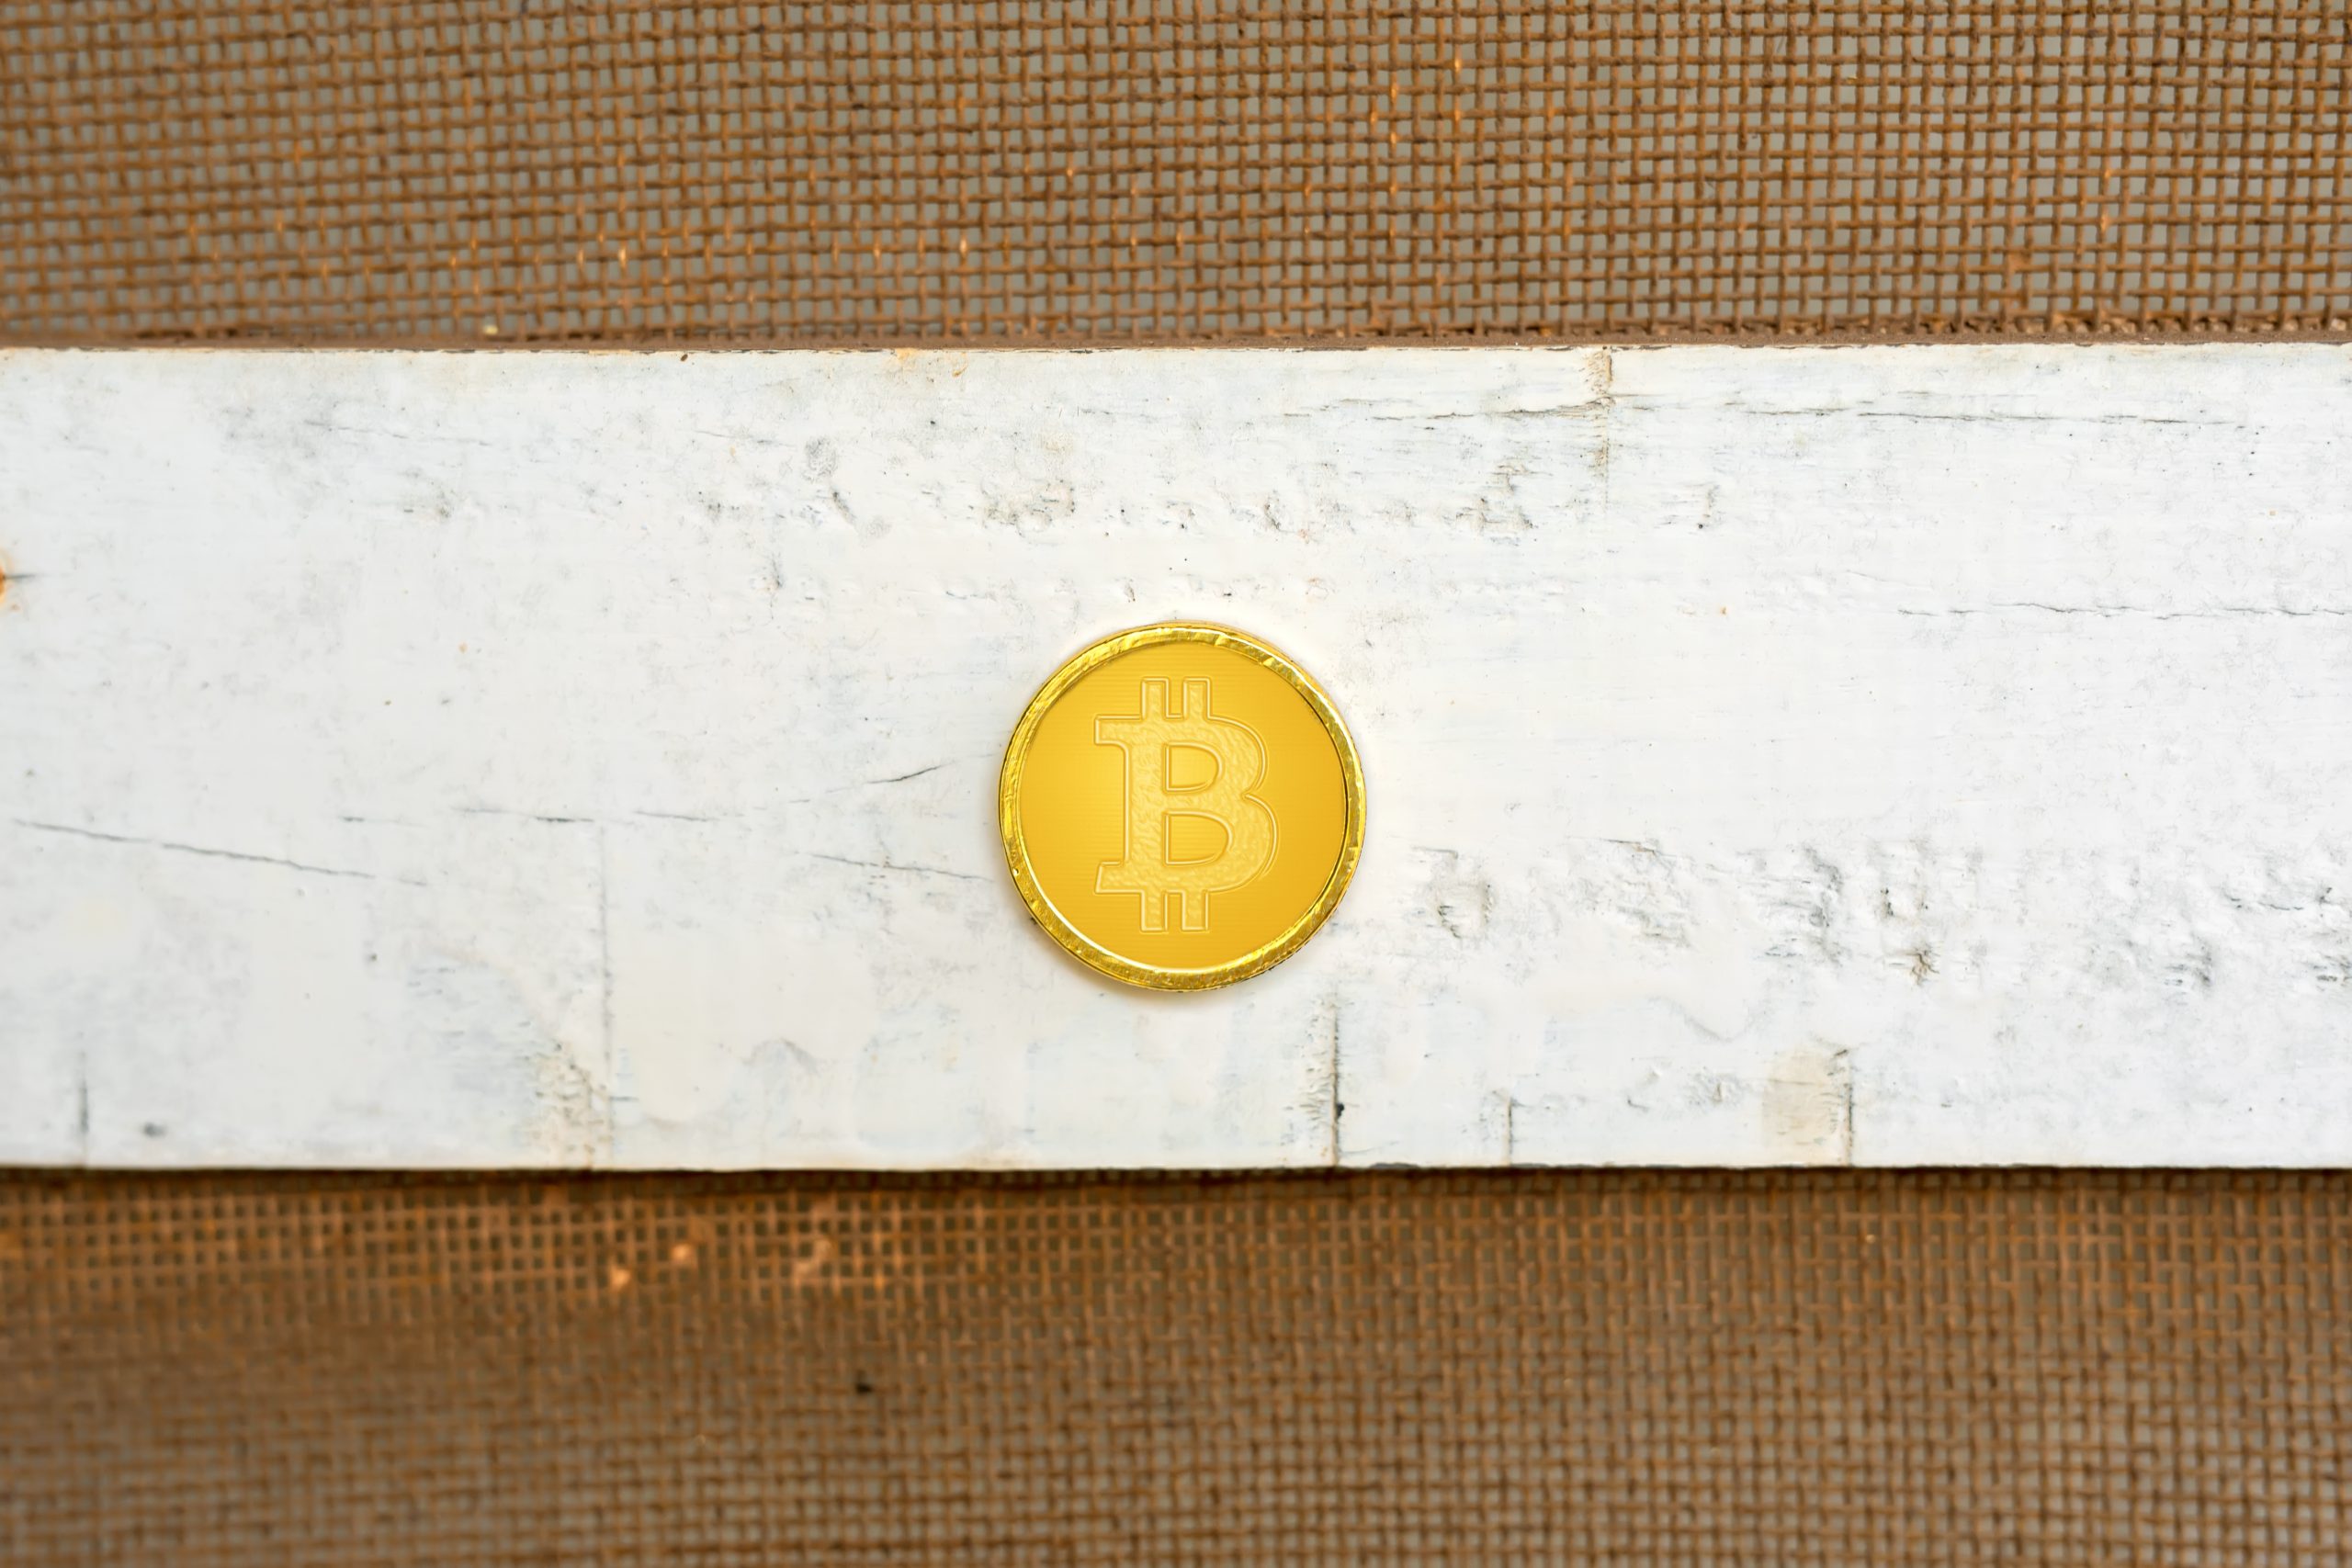 Bitcoin in use